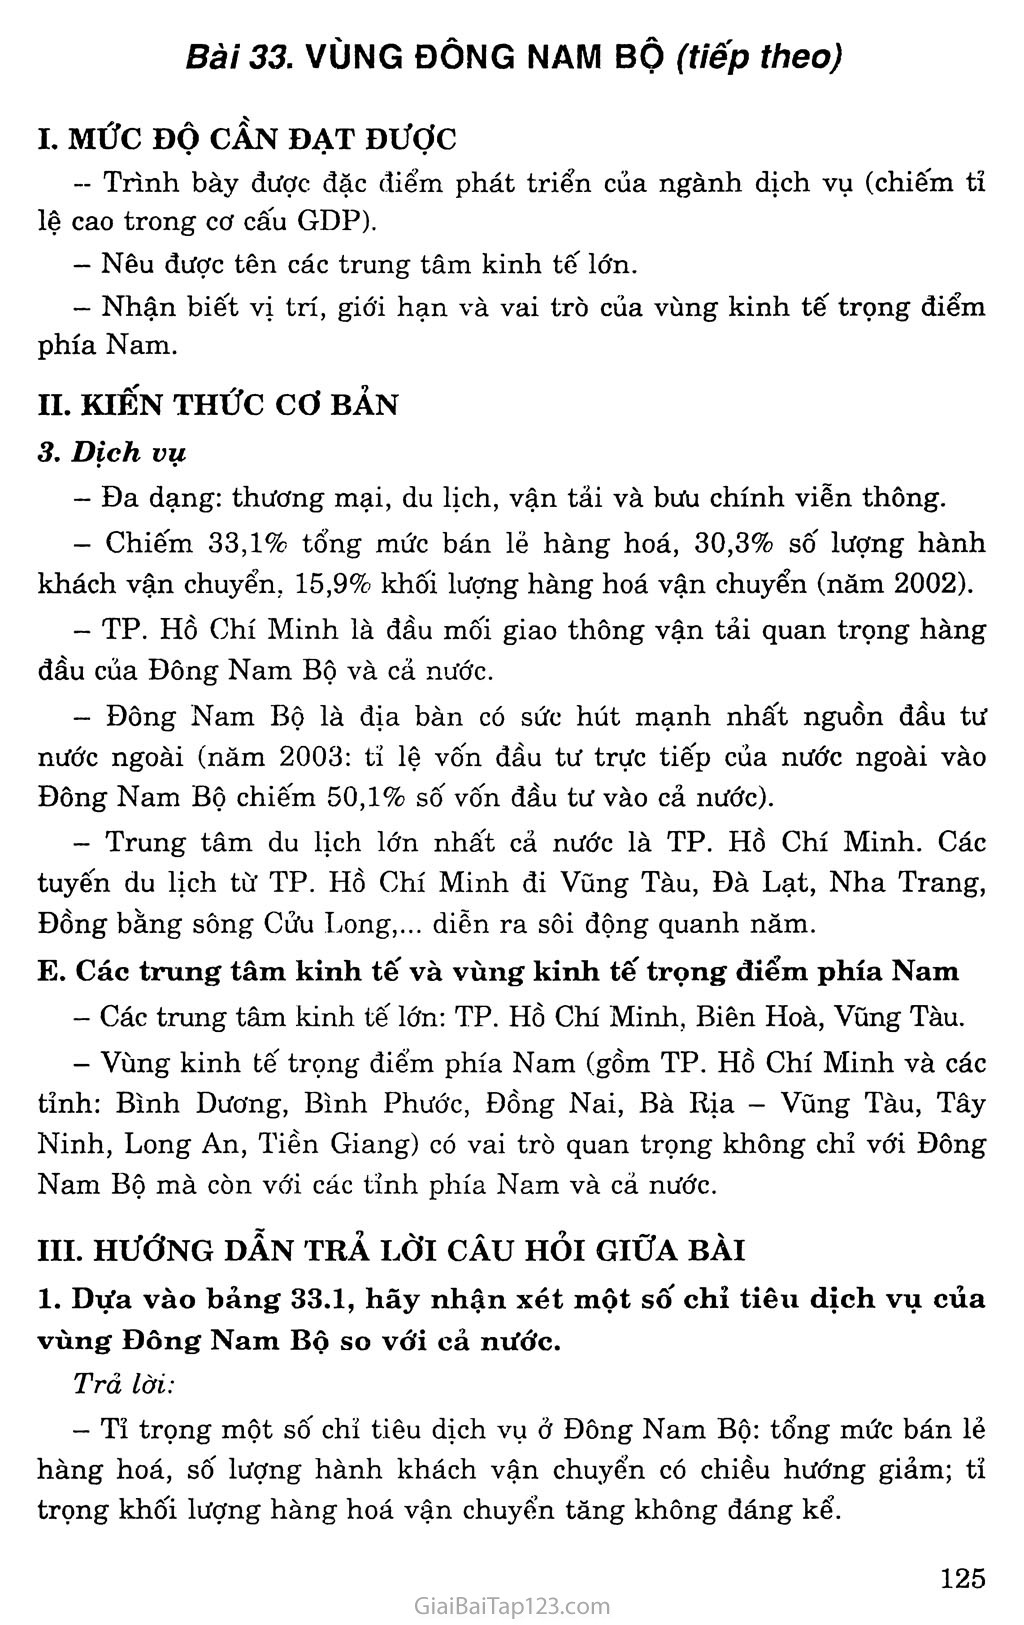 Bài 33: Vùng Đông Nam Bộ (tiếp theo) trang 1